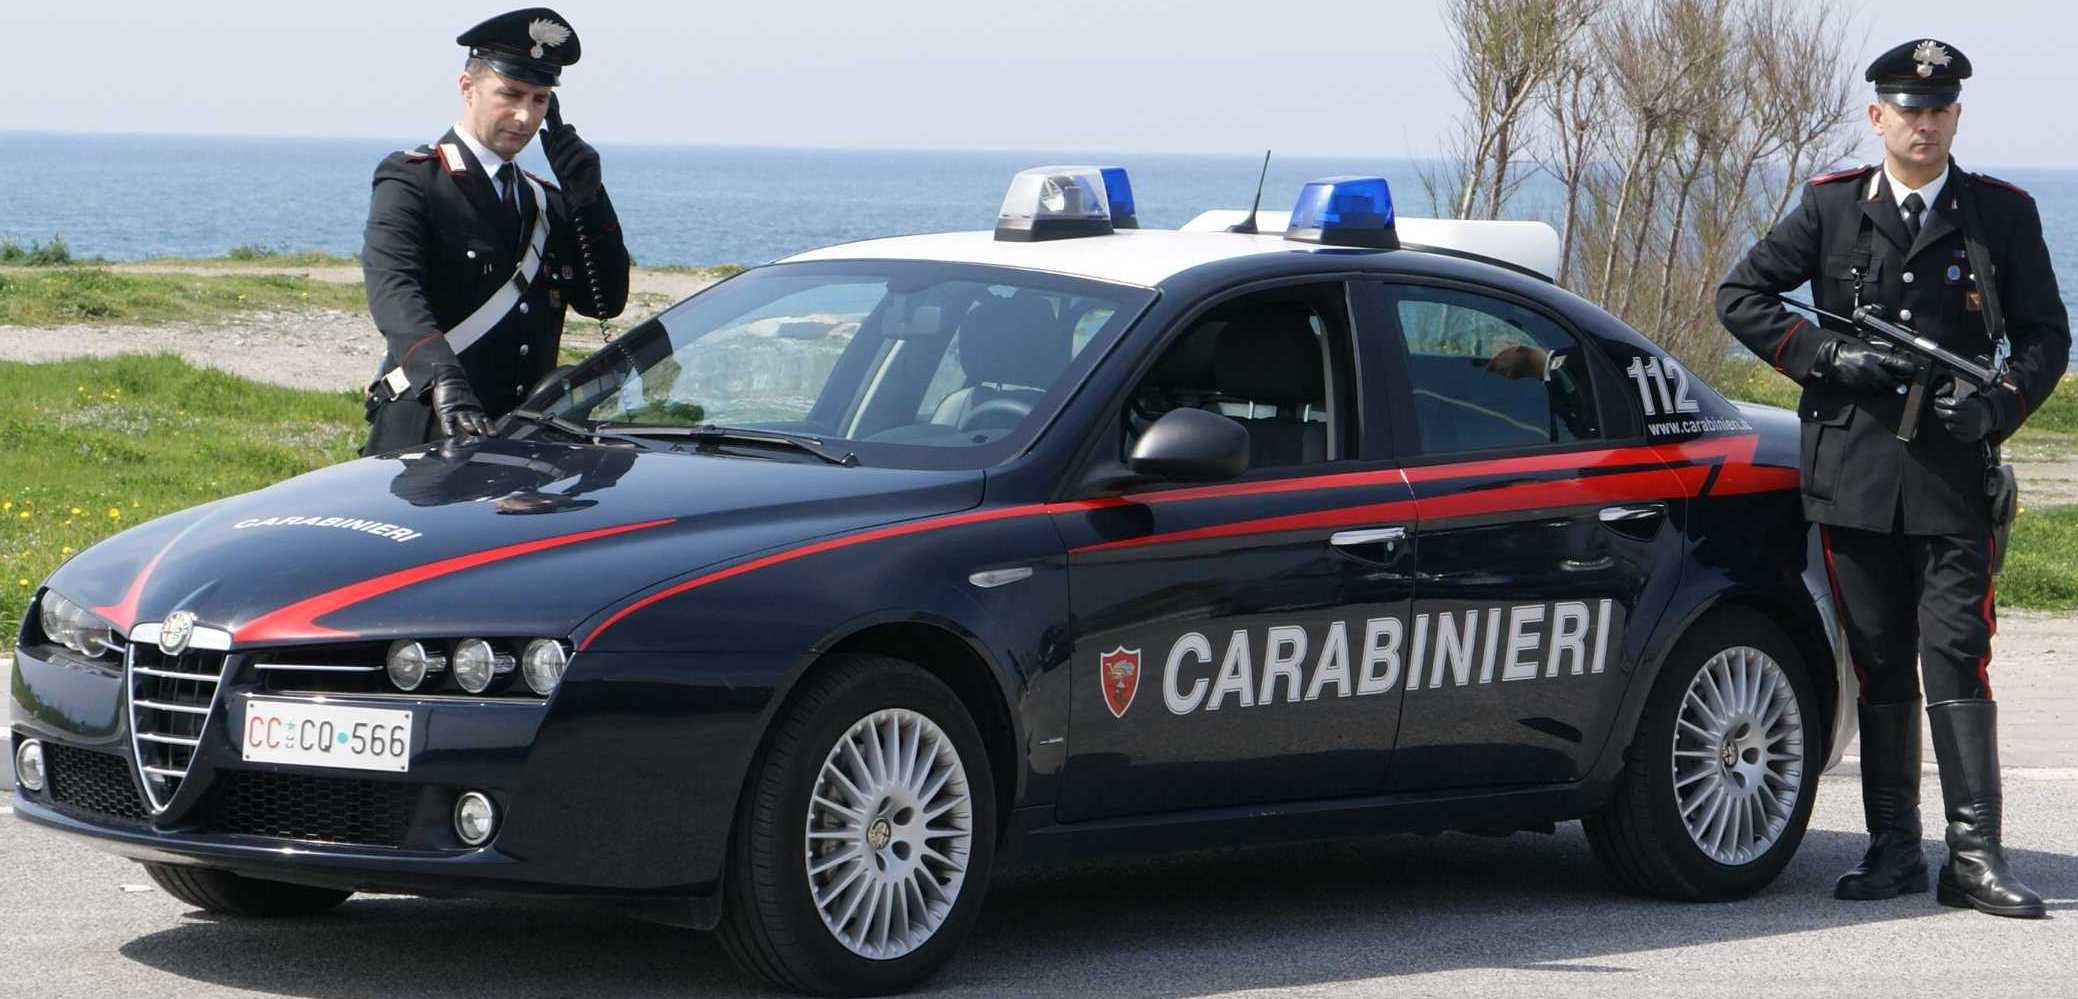 Manfredonia, recidivo nelle evasioni: arrestato pregiudicato 28enne